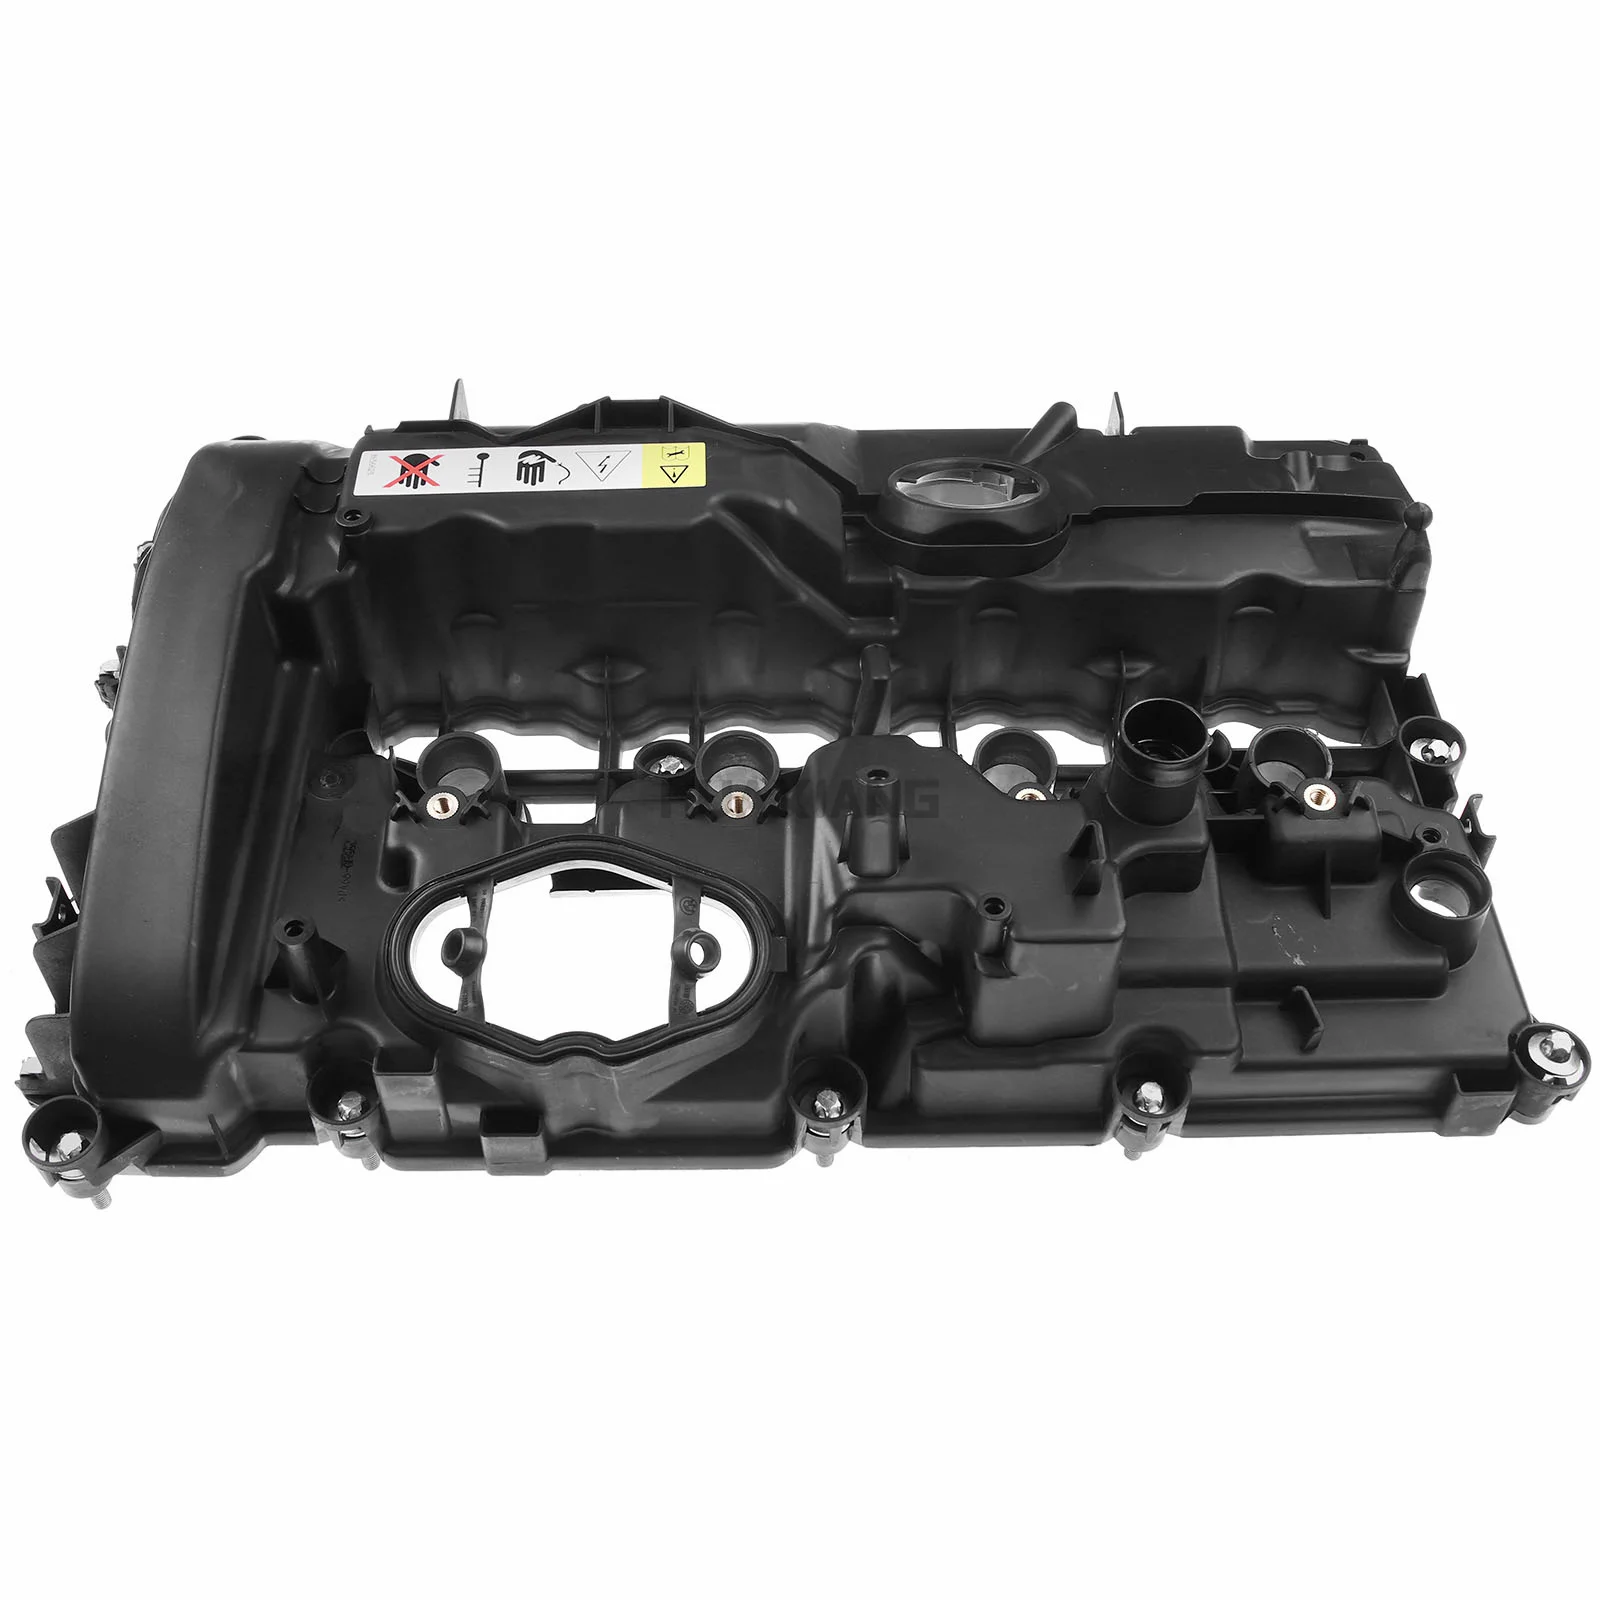 

RTS Engine Valve Cover Gasket for BMW F22 F23 F32 F36 F48 G01 Mini L4 2.0L B48 B46 11-12-7-611-278